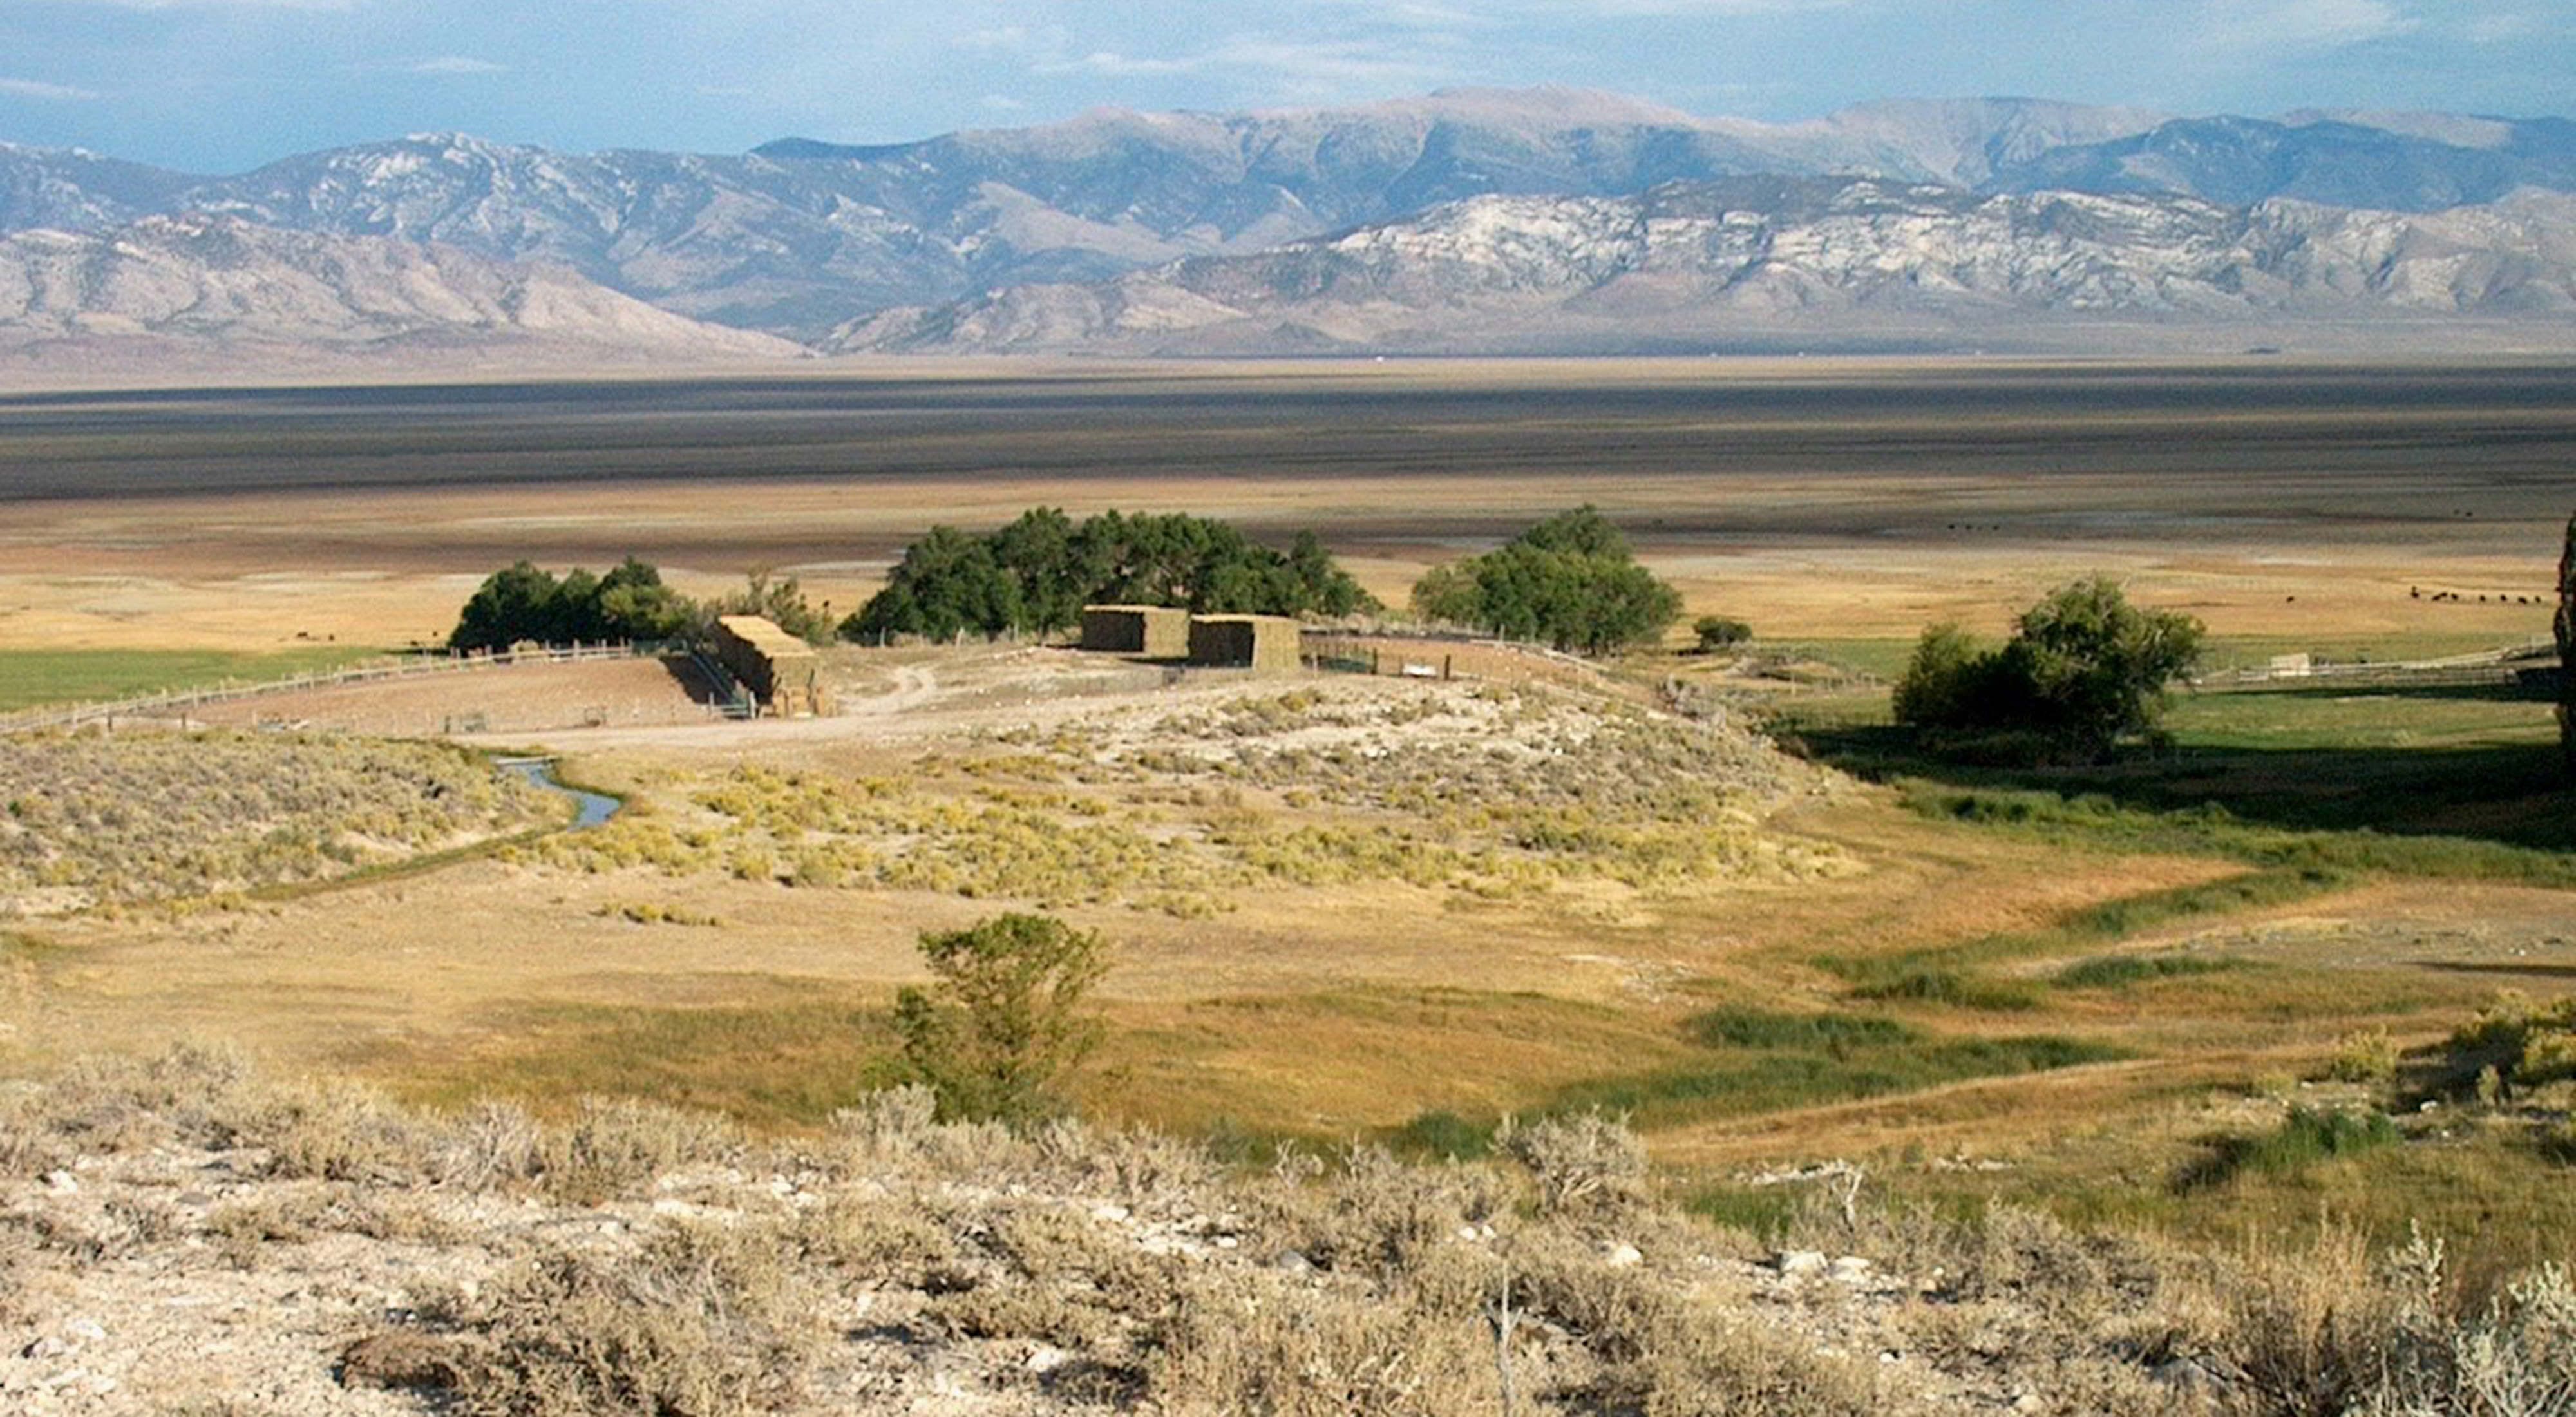 Steptoe Ranch in Nevada